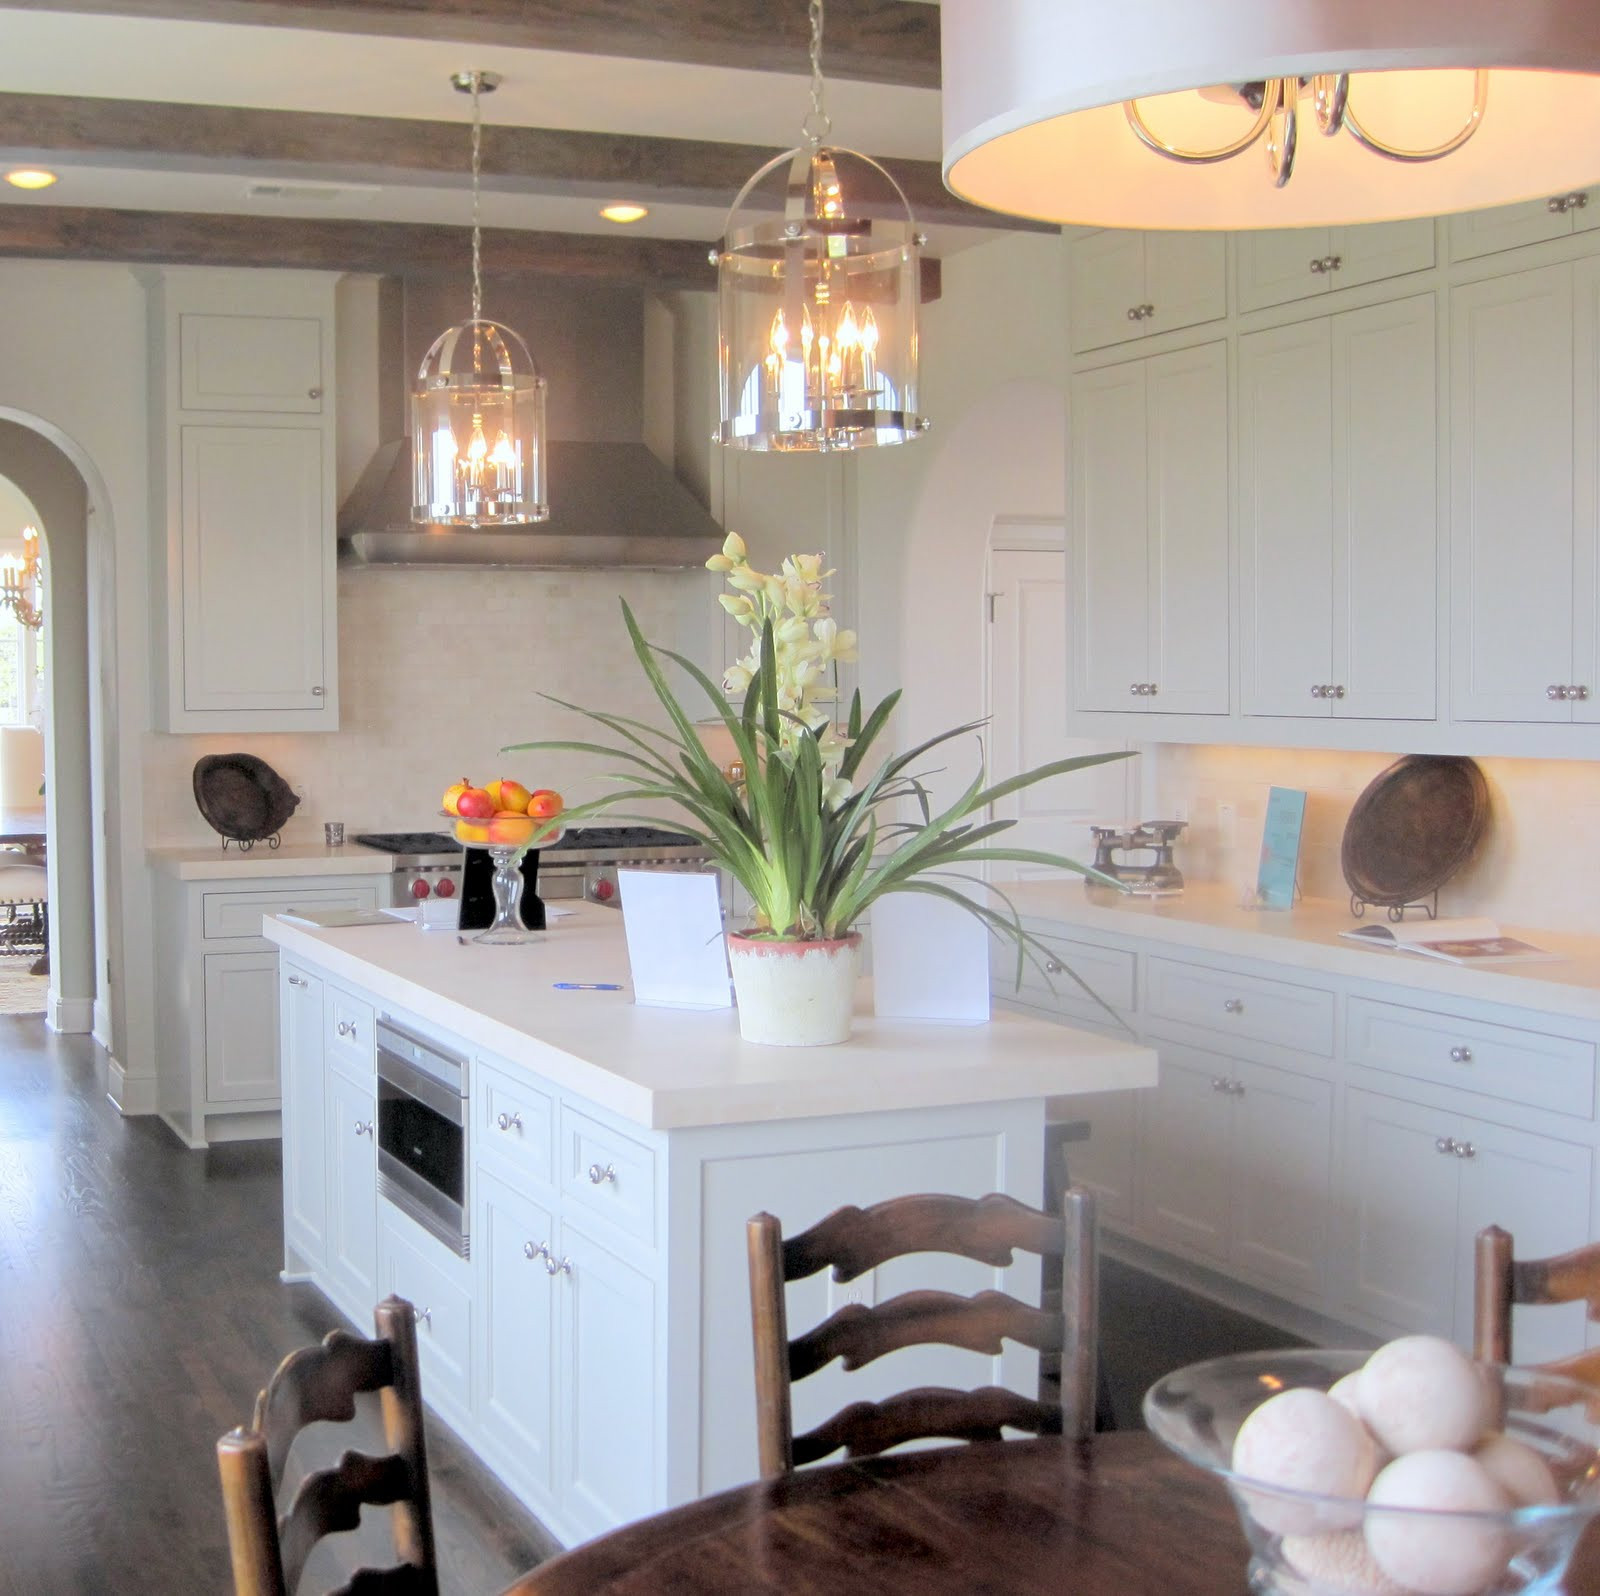 Light Pendants Kitchen
 Kitchen Pendant Light Fixture – HomesFeed